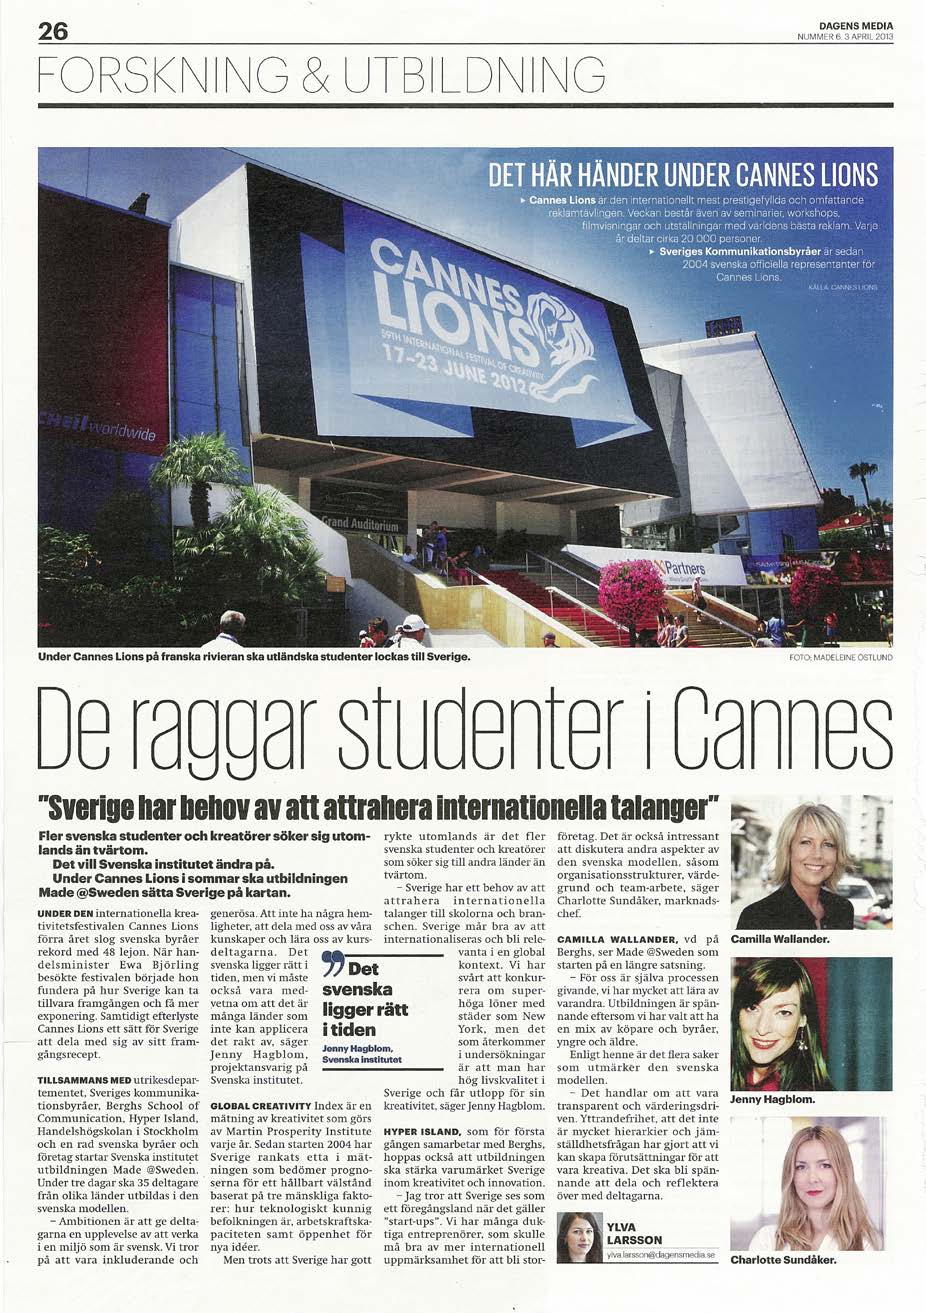 Cannes Lions Sveriges regering och branschen öppnade skola Svenskmingel KOMM tillsammans med partners Dagens Media, Posten och Sportsverige bjöd in till mingel där svenskar på plats träffades och